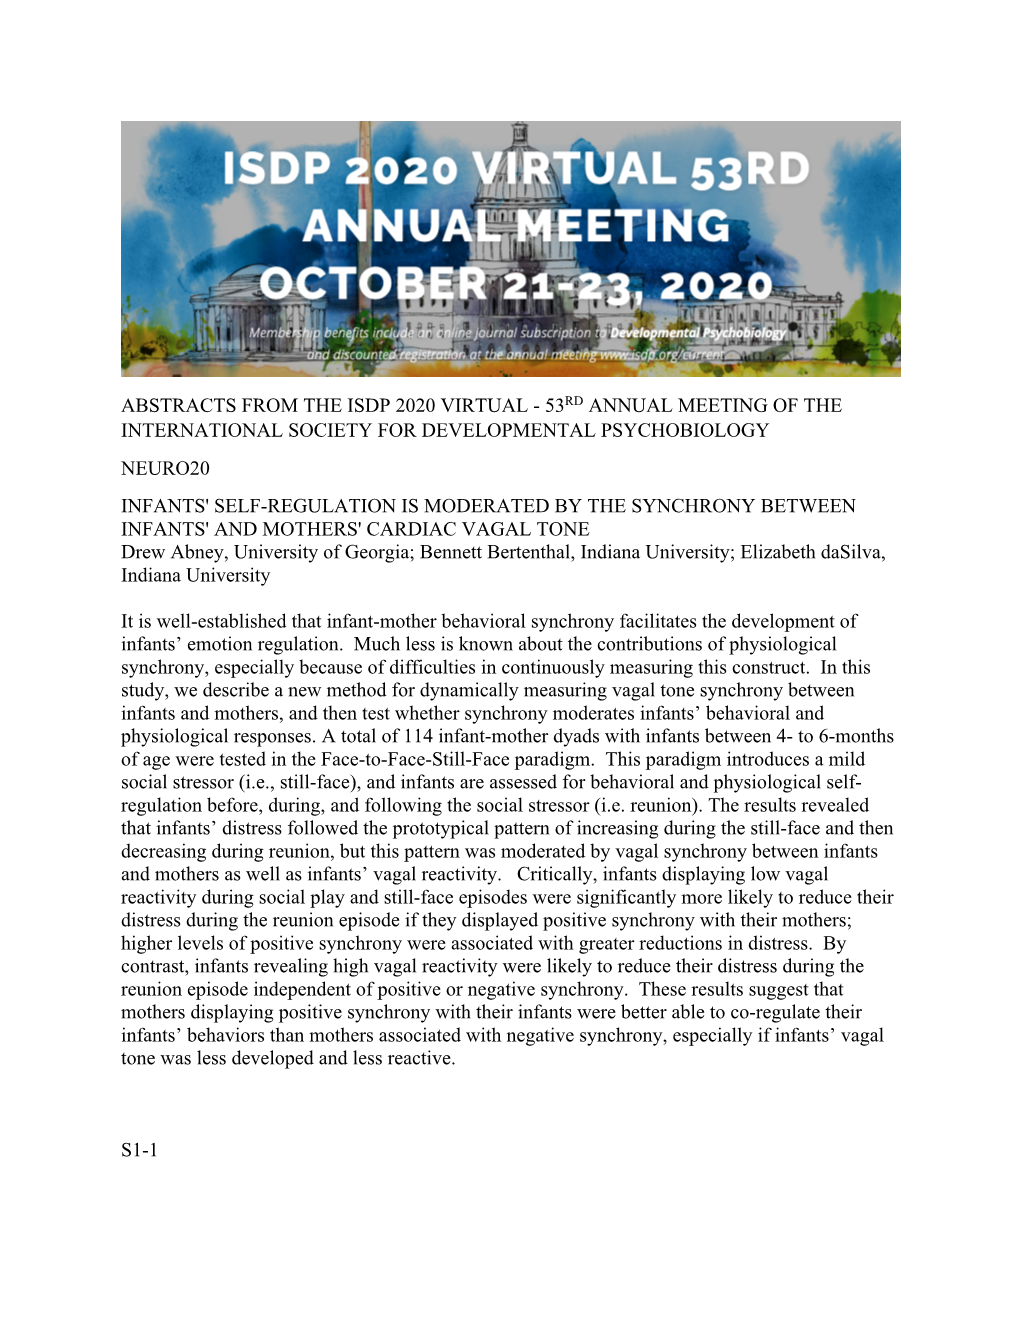 ISDP 2020 Virtual Meeting Abstracts